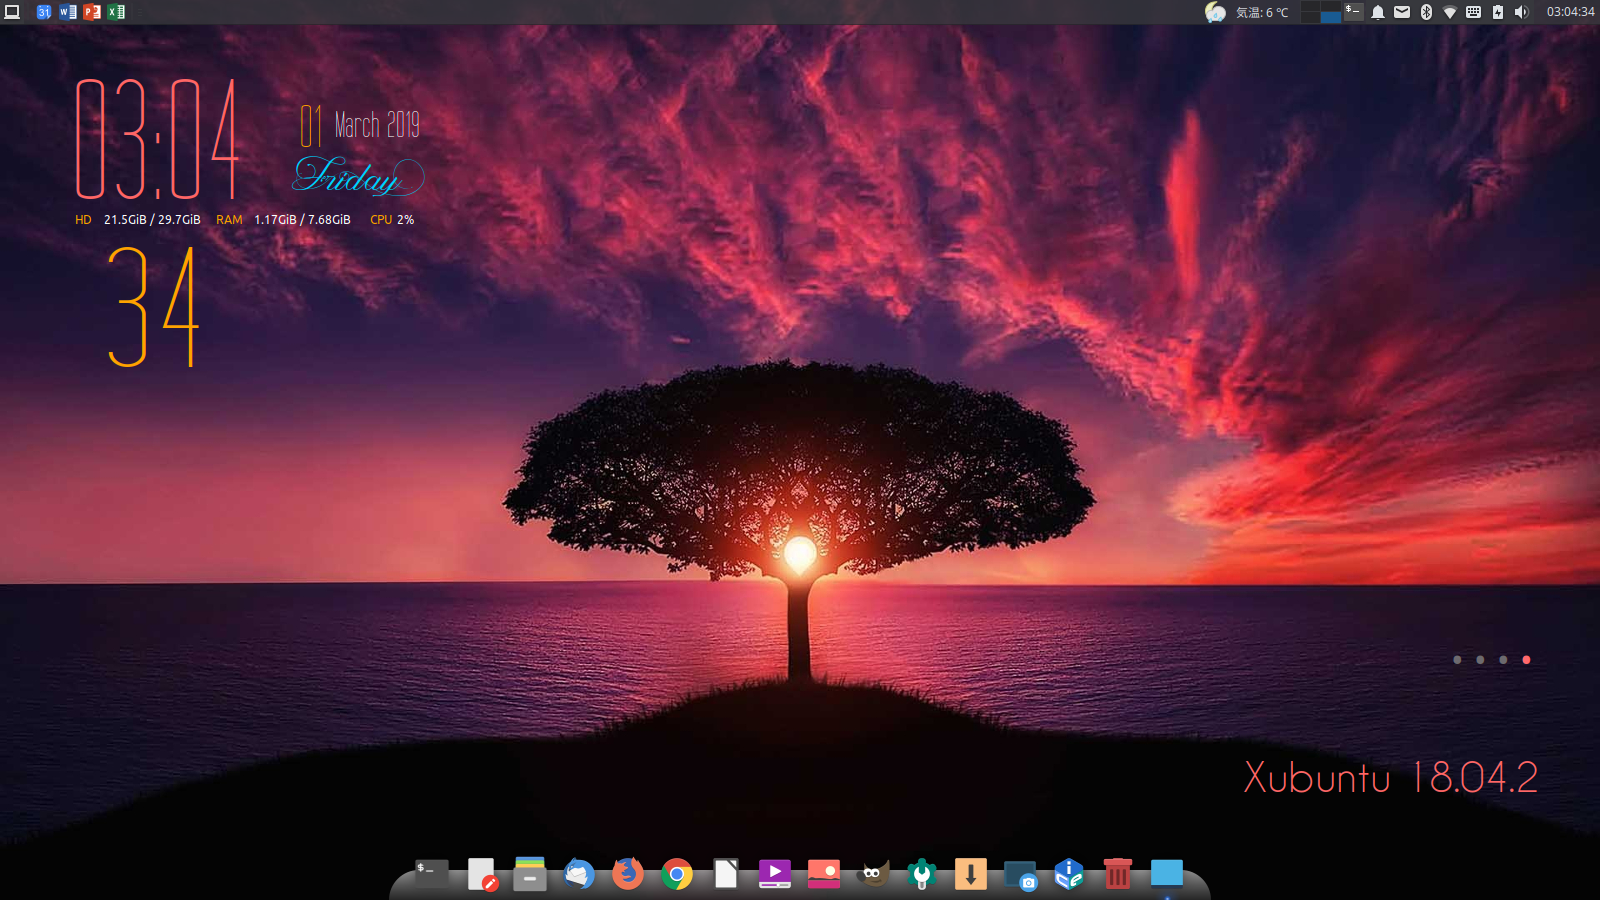 Xubuntu 18 04 2 Ubuntu 18 04 2ポイントリリースフレーバー その5 最もバランスの取れたxfce4デスクトップ環境の基本設定を押さえる